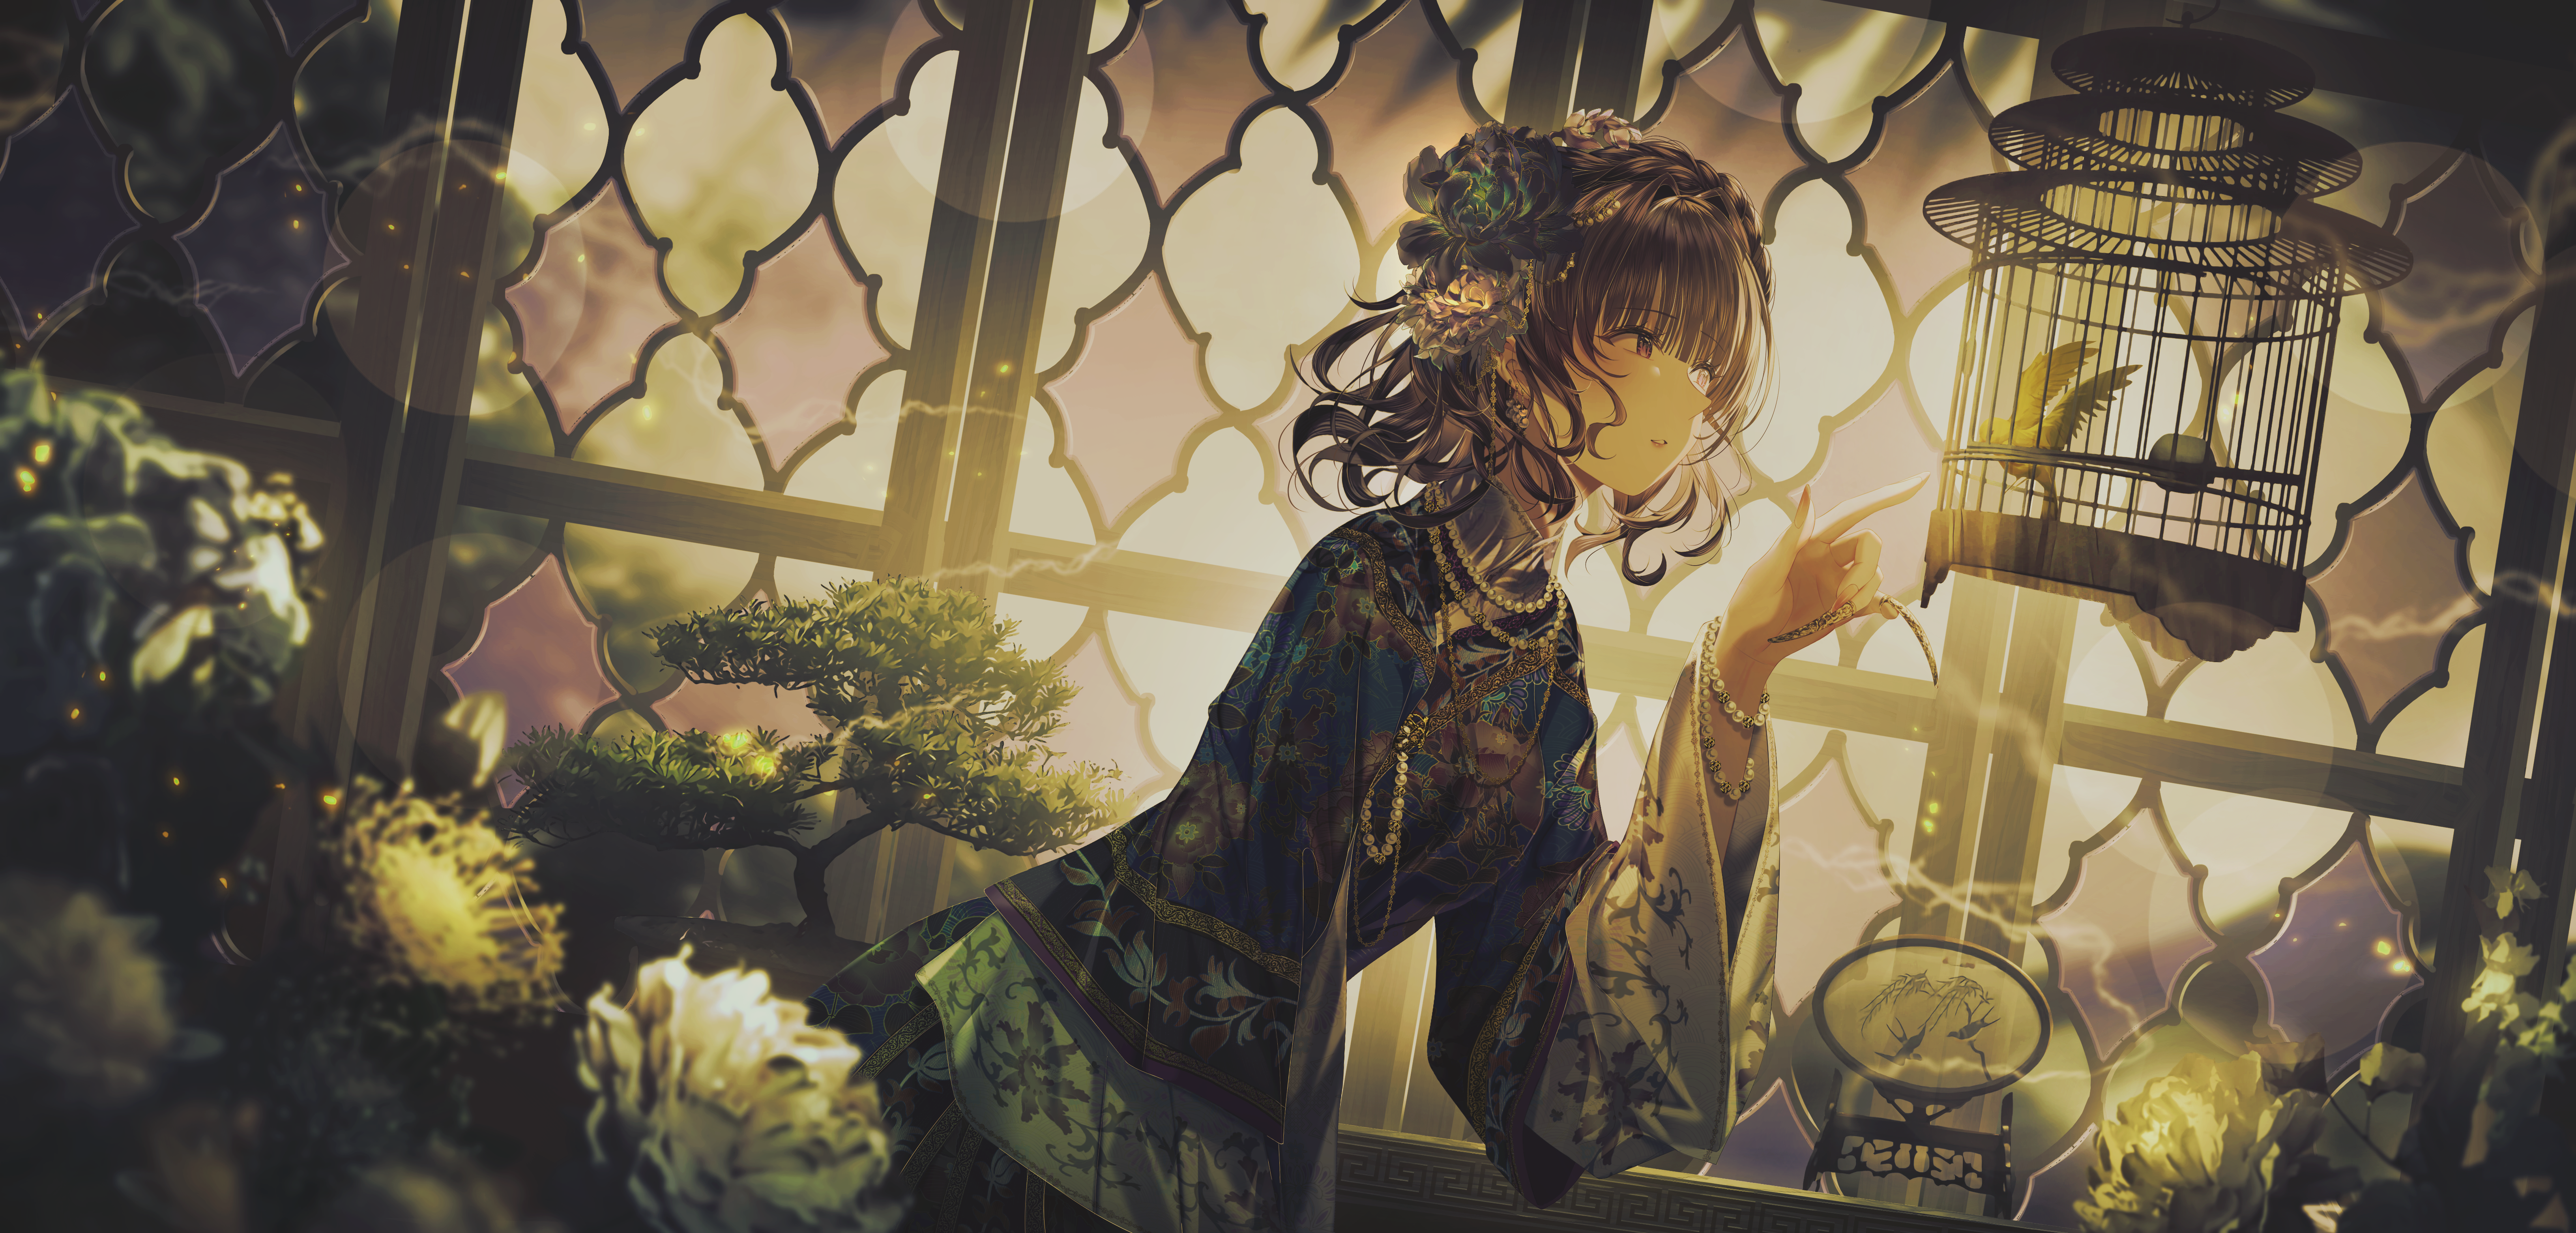 Anime Anime Girls Short Hair Dress Flowers Window Sunlight Cages Birds Flower In Hair 6528x3124